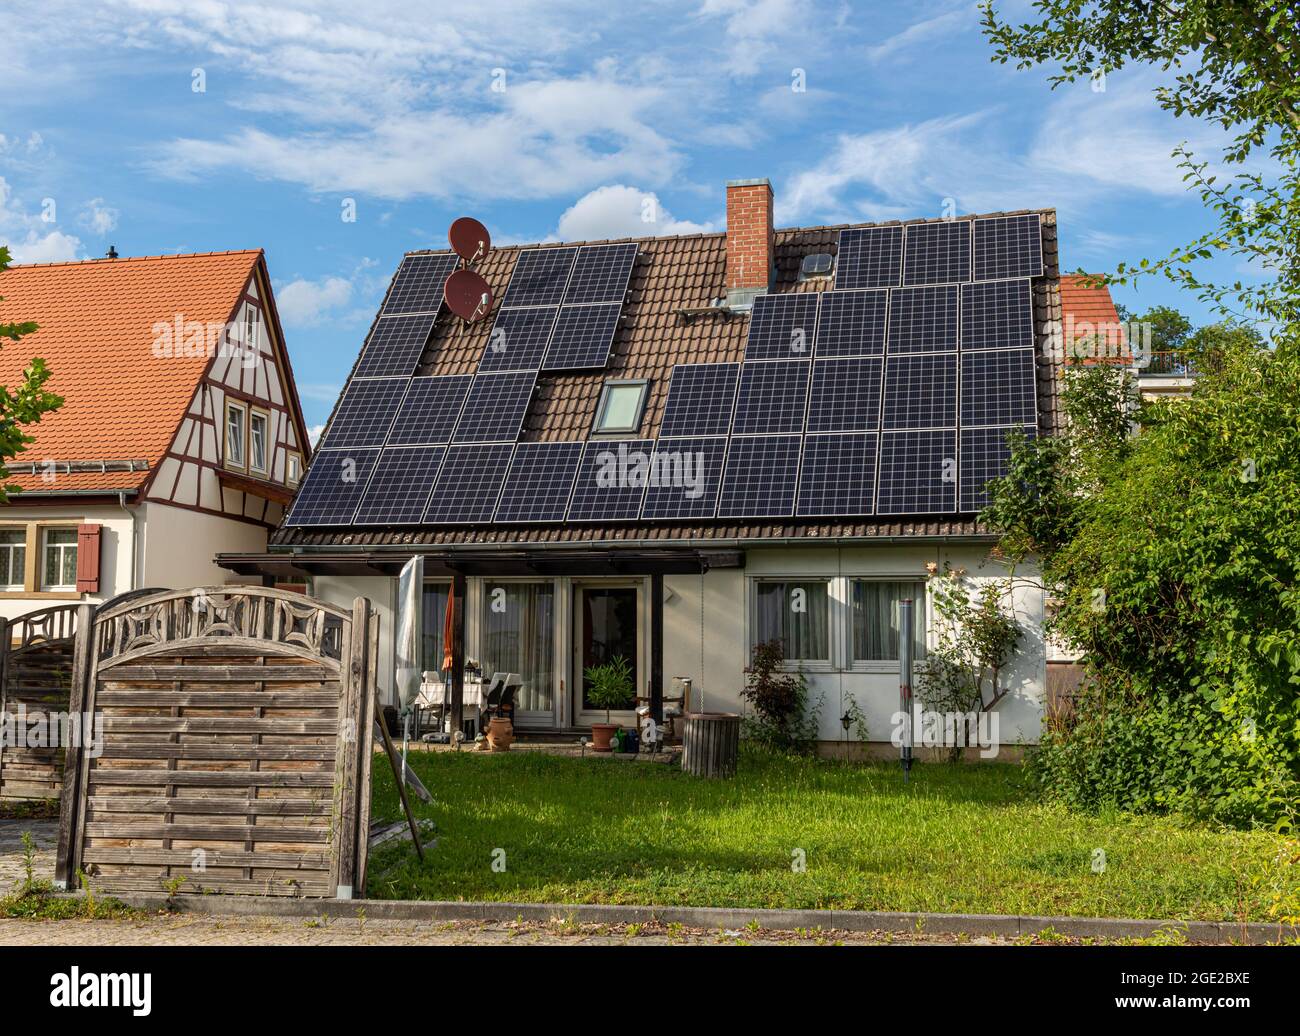 Einfamilienhaus in Deutschland mit nachgerüstter Photovoltaik-Solaranlage auf dem Dach Stockfoto